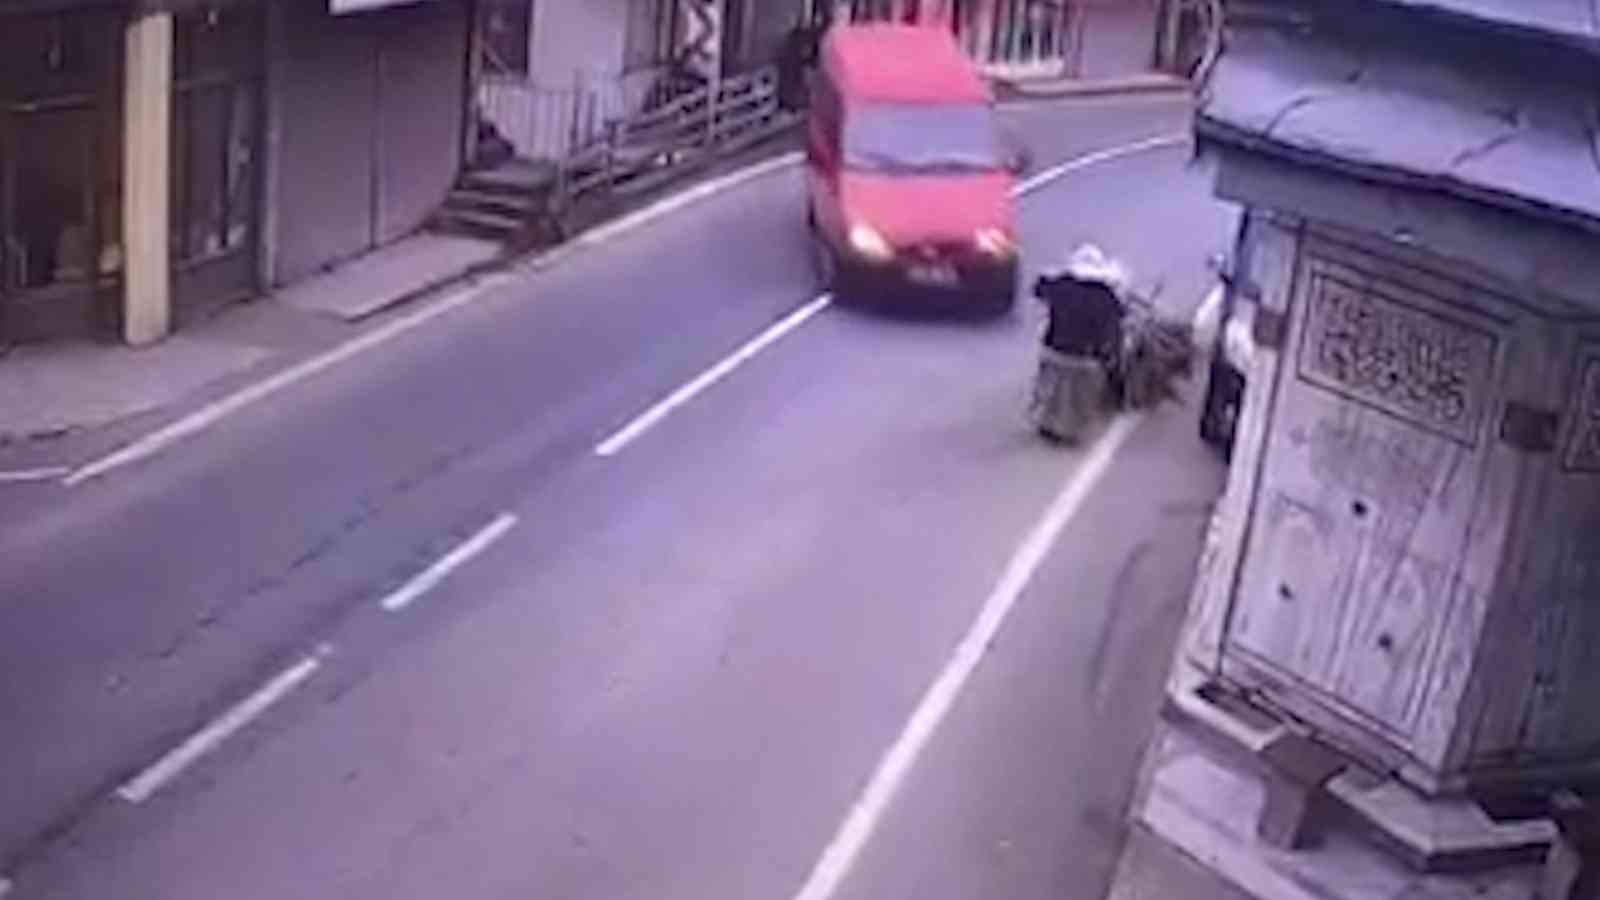 Rize’de feci kaza: Şadırvan ile minibüs arasında sıkıştı #rize